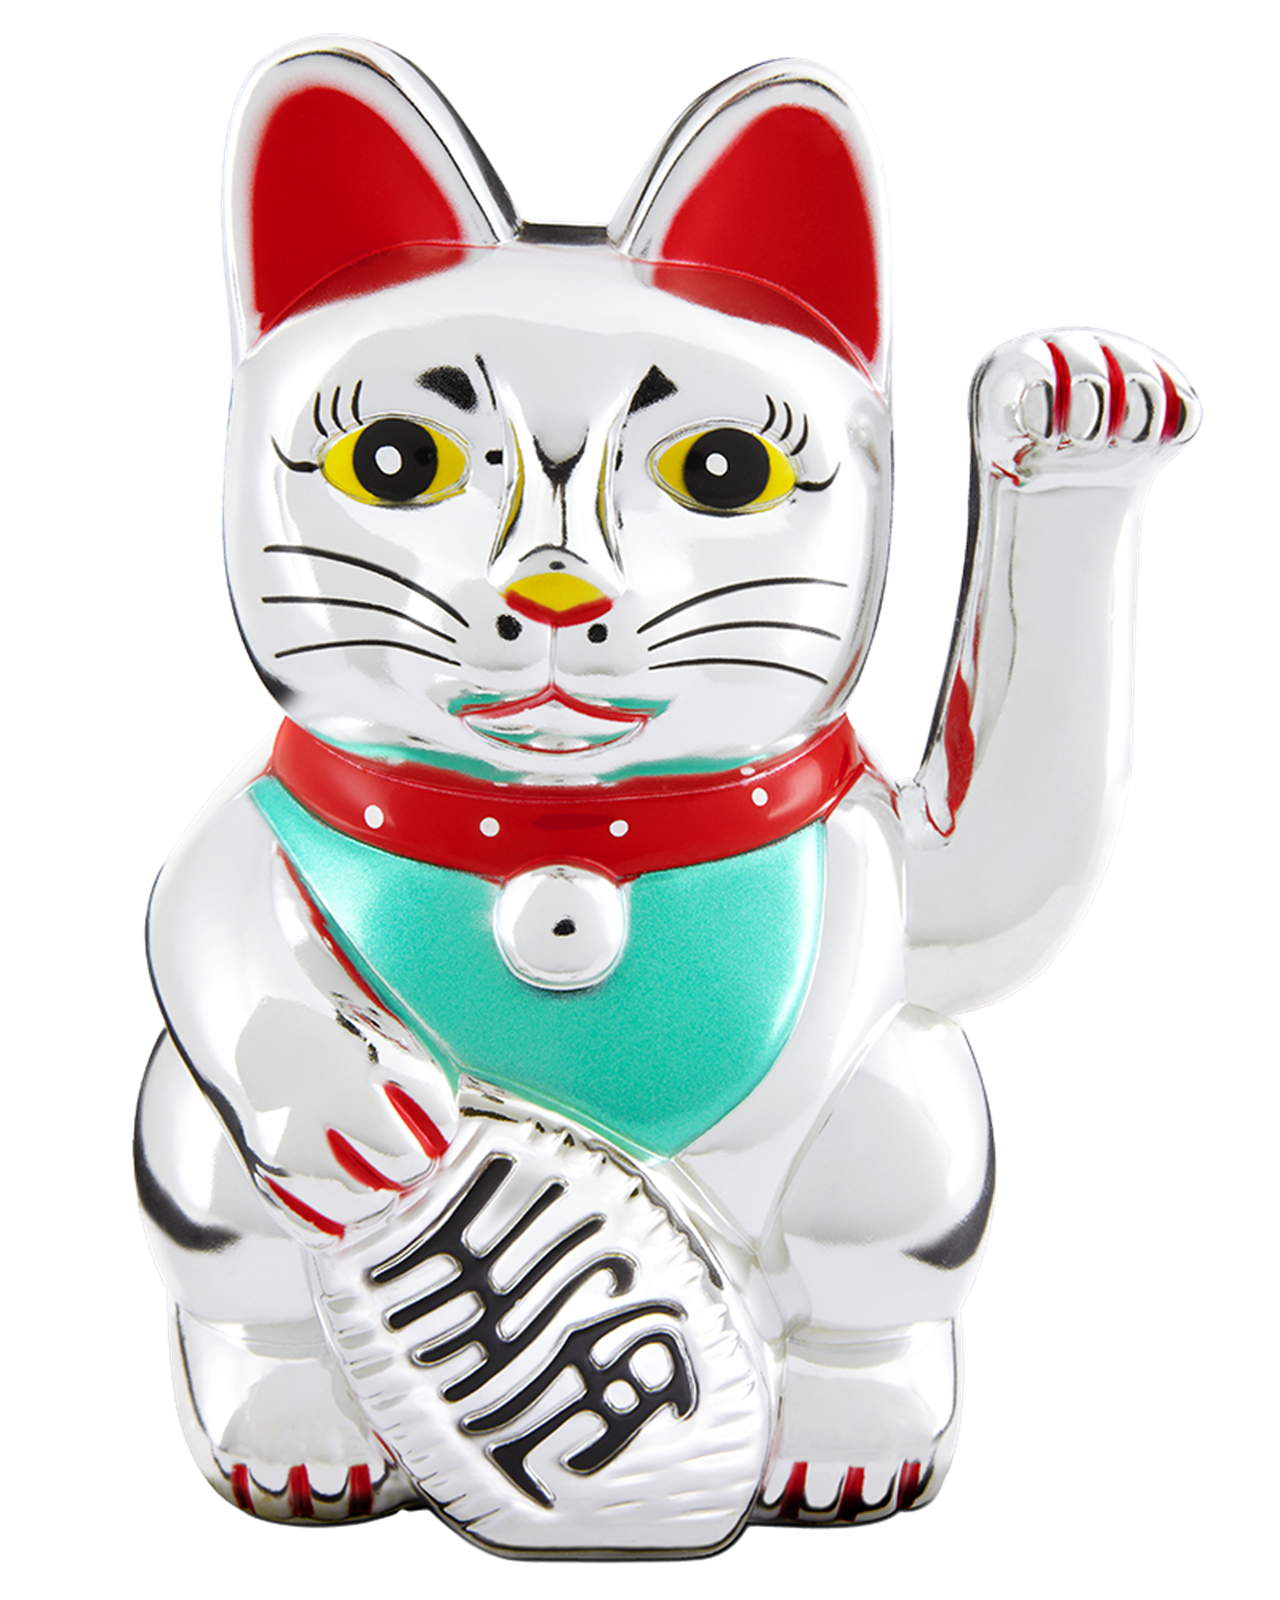 Maneki-neko ist eine Winkekatze und ist ein beliebter japanischer Glücksbringer und Talisman in Gestalt einer aufrecht sitzenden Katze, die den Betrachter mit ihrer rechten oder linken Pfote herbeiwinkt.